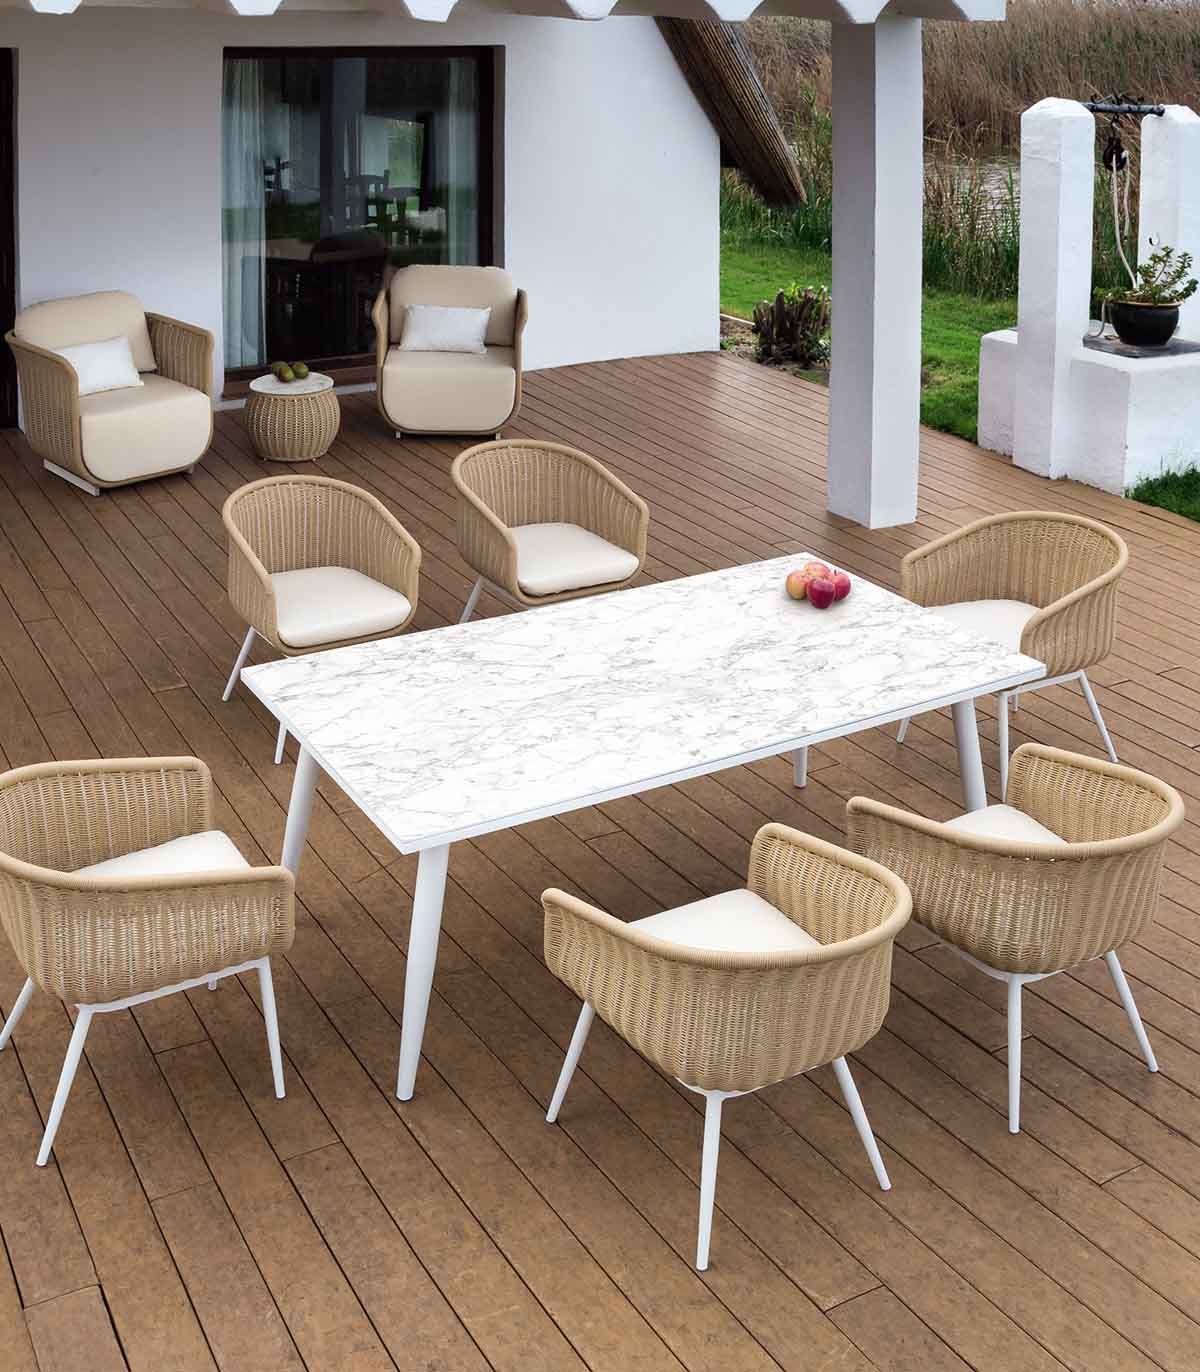 https://www.decoracionbeltran.com/52287-superlarge_default/mesa-de-terraza-y-jardin-en-aluminio-blanco-coleccion-palma.jpg